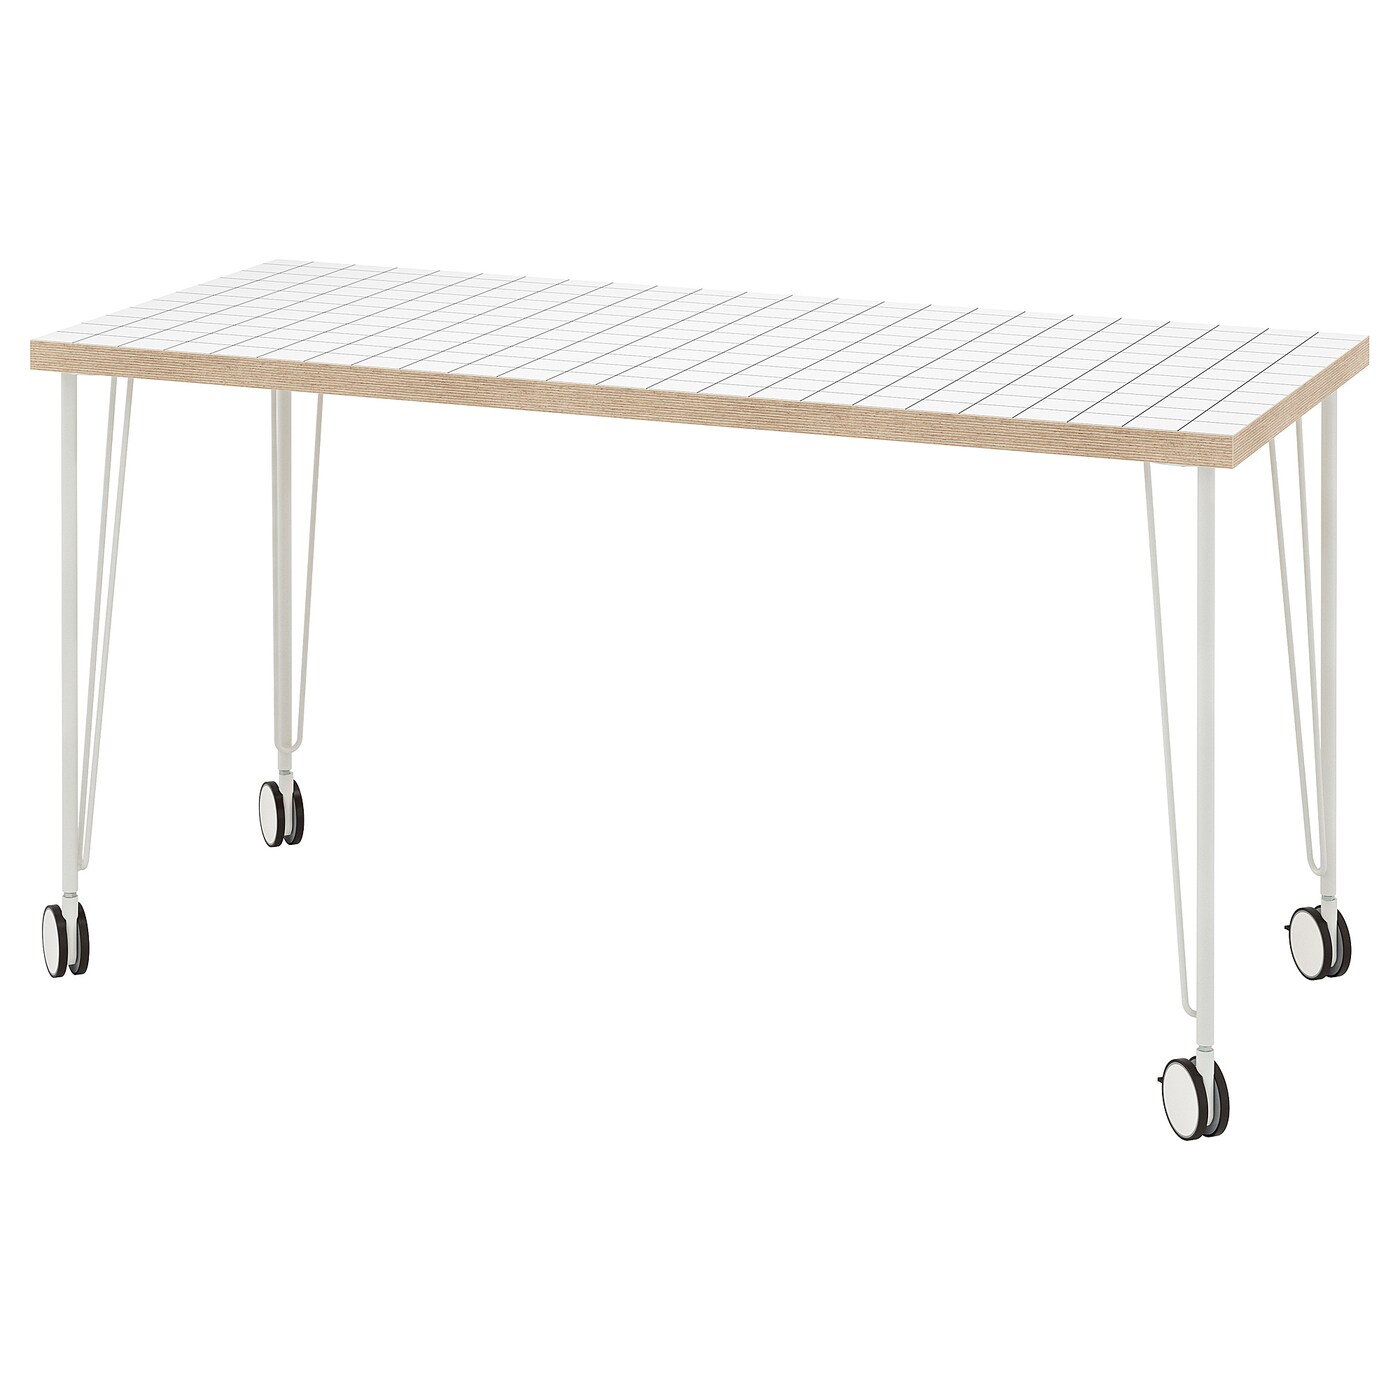 Письменный стол - IKEA LAGKAPTEN/KRILLE, 140х60 см, антрацит/белый, ЛАГКАПТЕН/КРИЛЛЕ ИКЕА